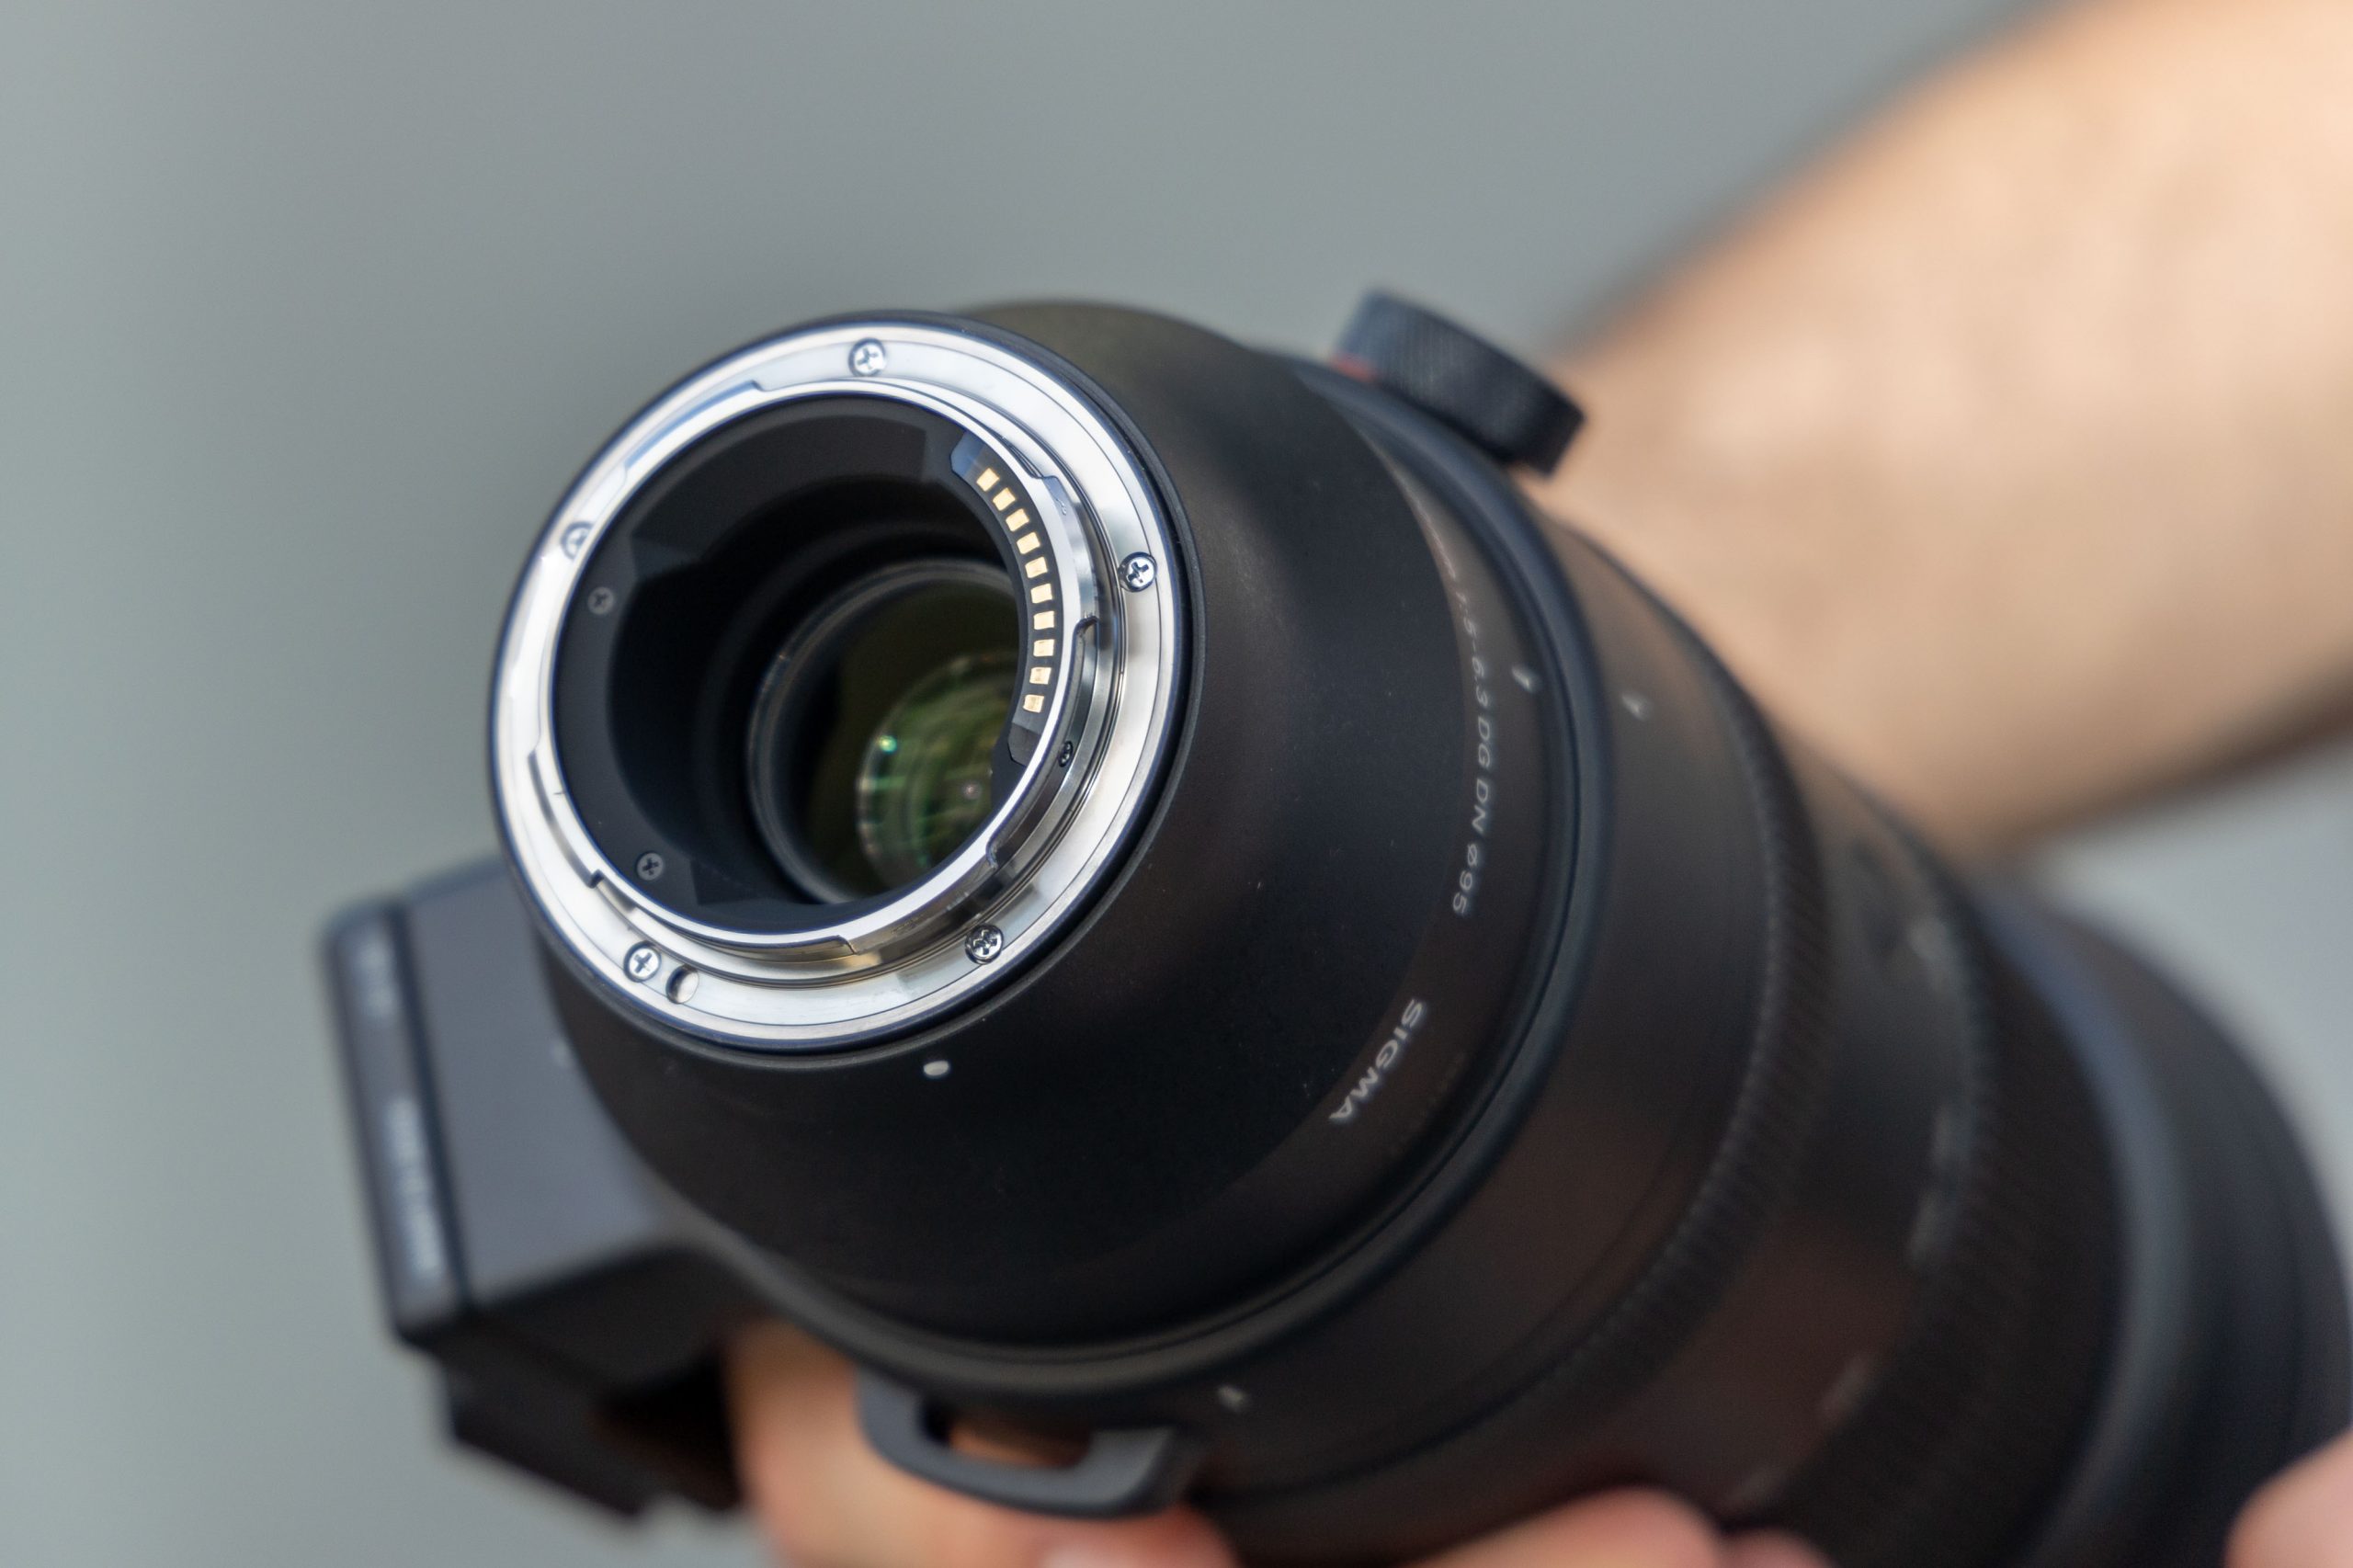 Sigma ra mắt ống kính Sigma 150-600mm F5-6.3 DG DN OS Sport cho ngàm E và ngàm L